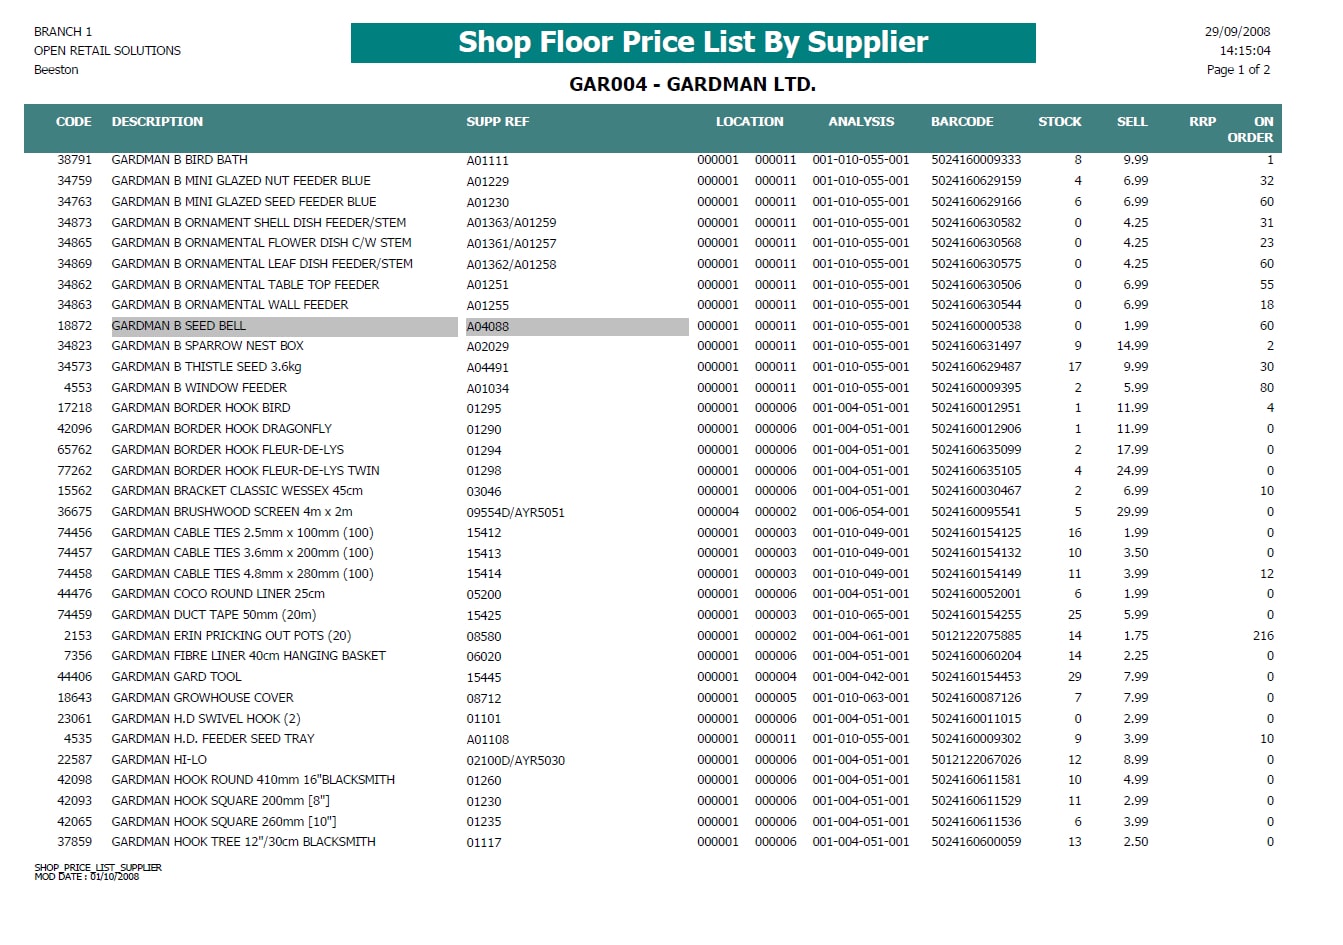 report-shop-floor-pricelist-by-supplier